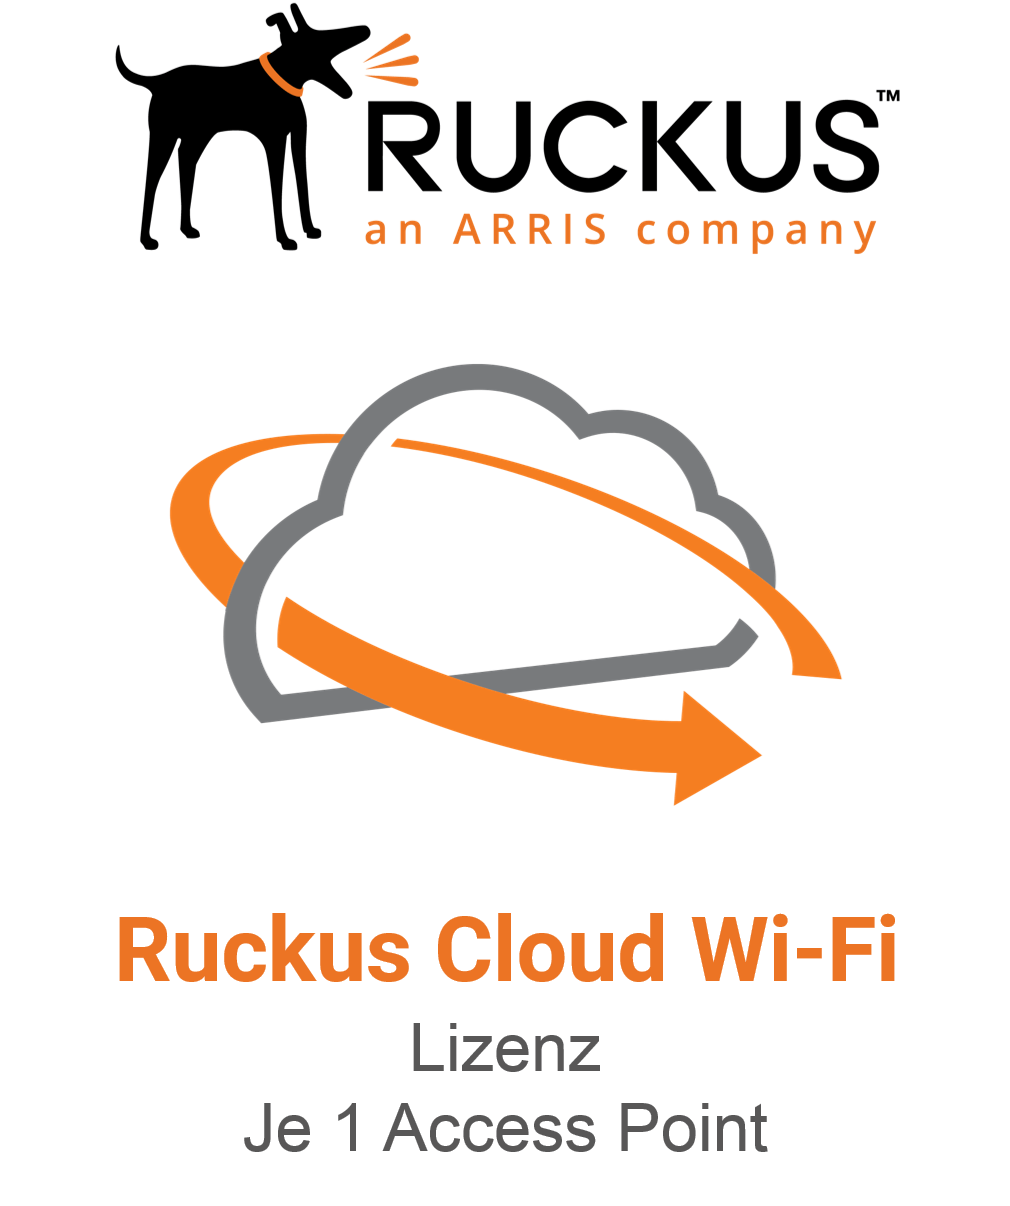 Ruckus Cloud Wi-Fi